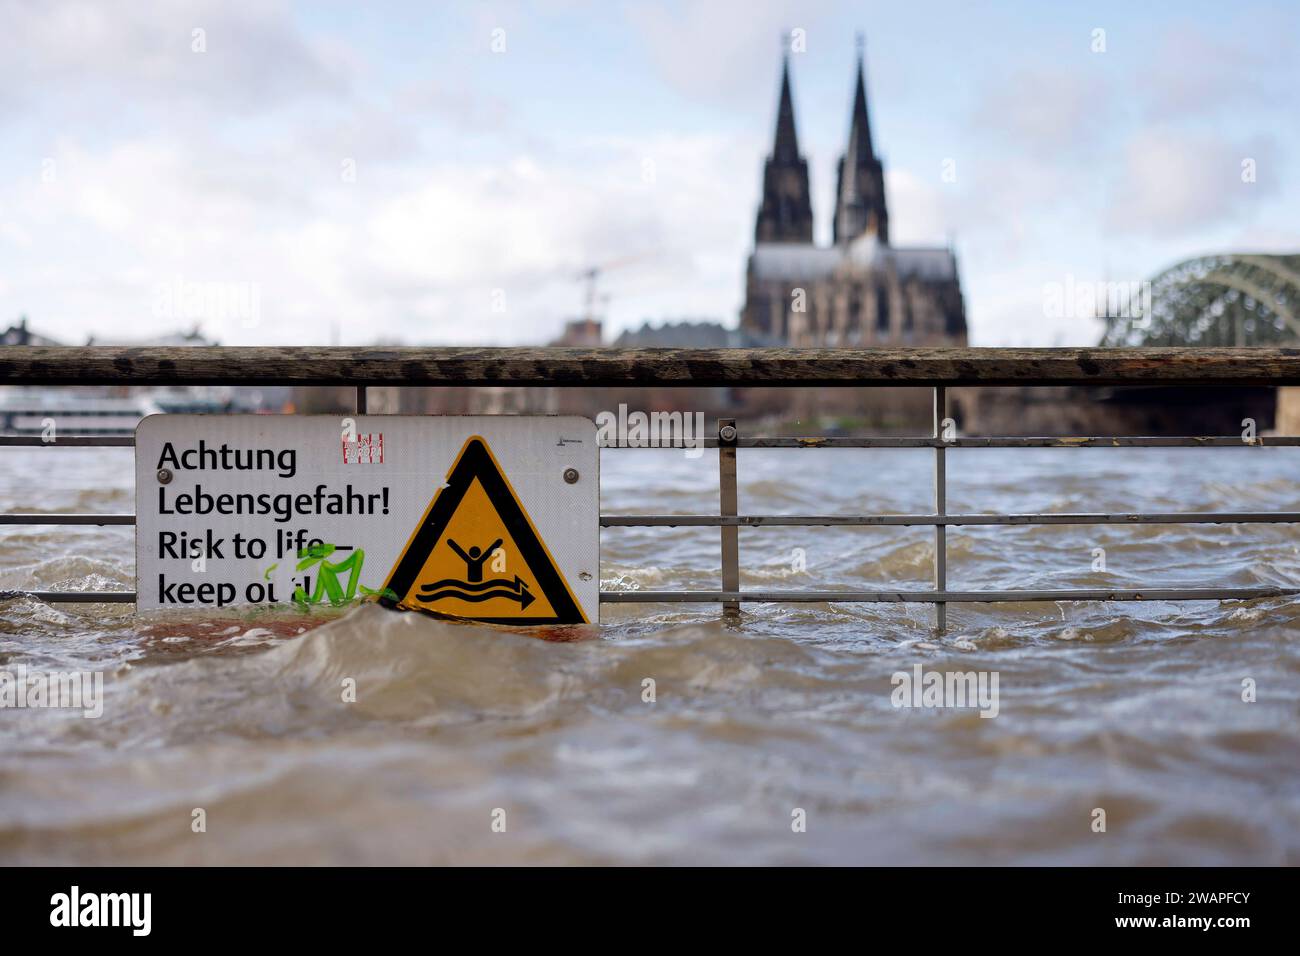 Impression vom Hochwasser in Köln am Ufer von Köln-Deutz: Am Ufer des Rhein sind Teile des Rheinboulevard, Gehwege und Wiesen überflutet. Absperrungen weisen auf Lebensgefahr bei Hochwasser Hin. DAS nasse Wetter Hat die Pegel von Bächen und Flüssen steigen lassen. Böden sind aufgeweicht und können kein weiteres Wasser fassen. für die kommenden Tage wird Dauerregen befürchtet. Themenbild, Symbolbild Köln, 03.01.2024 NRW Deutschland *** impressione delle inondazioni a Colonia sulle rive di Colonia Deutz sulle rive del Reno, parti del RheinBoulevard, sentieri e prati sono allagati Bar Foto Stock